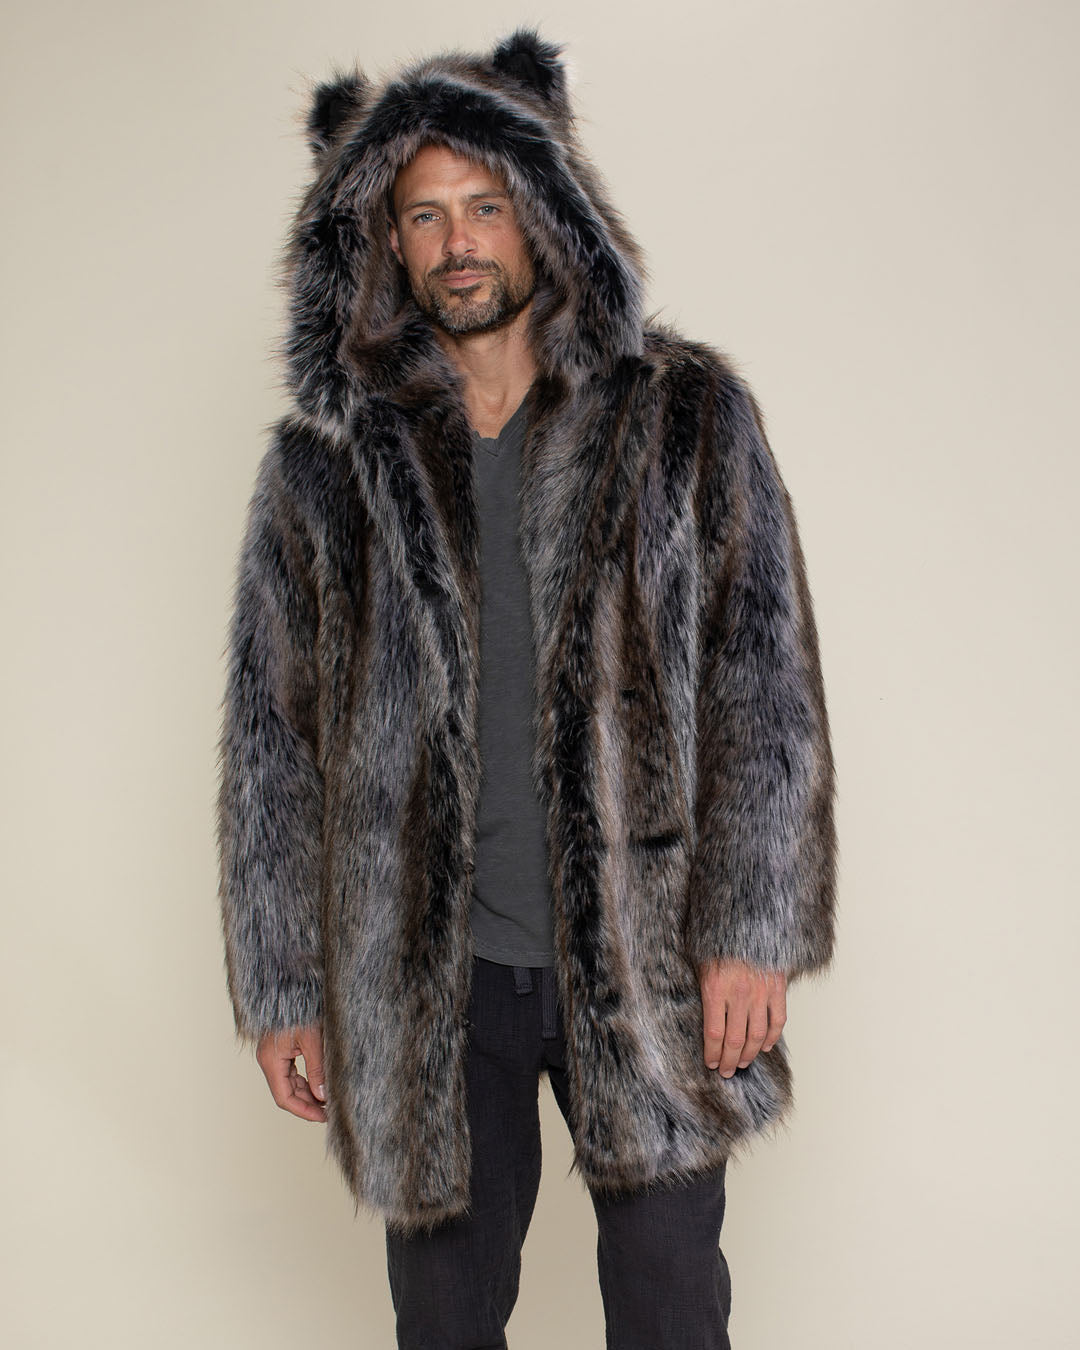 Designer Men's Black Shearling Fur Coat